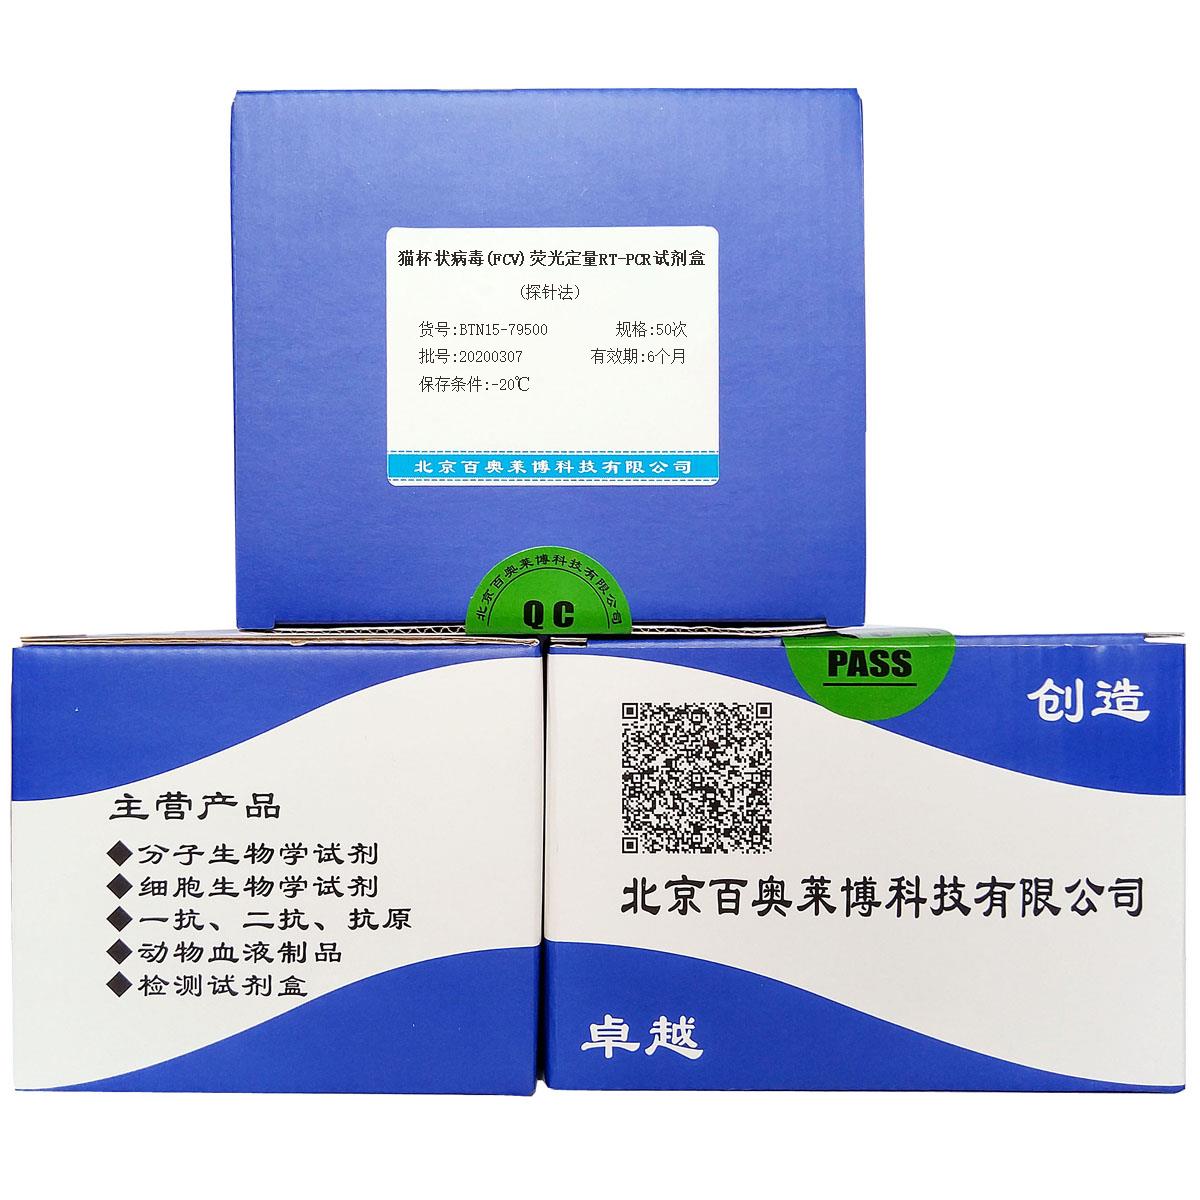 猫杯状病毒(FCV)荧光定量RT-PCR试剂盒(探针法)